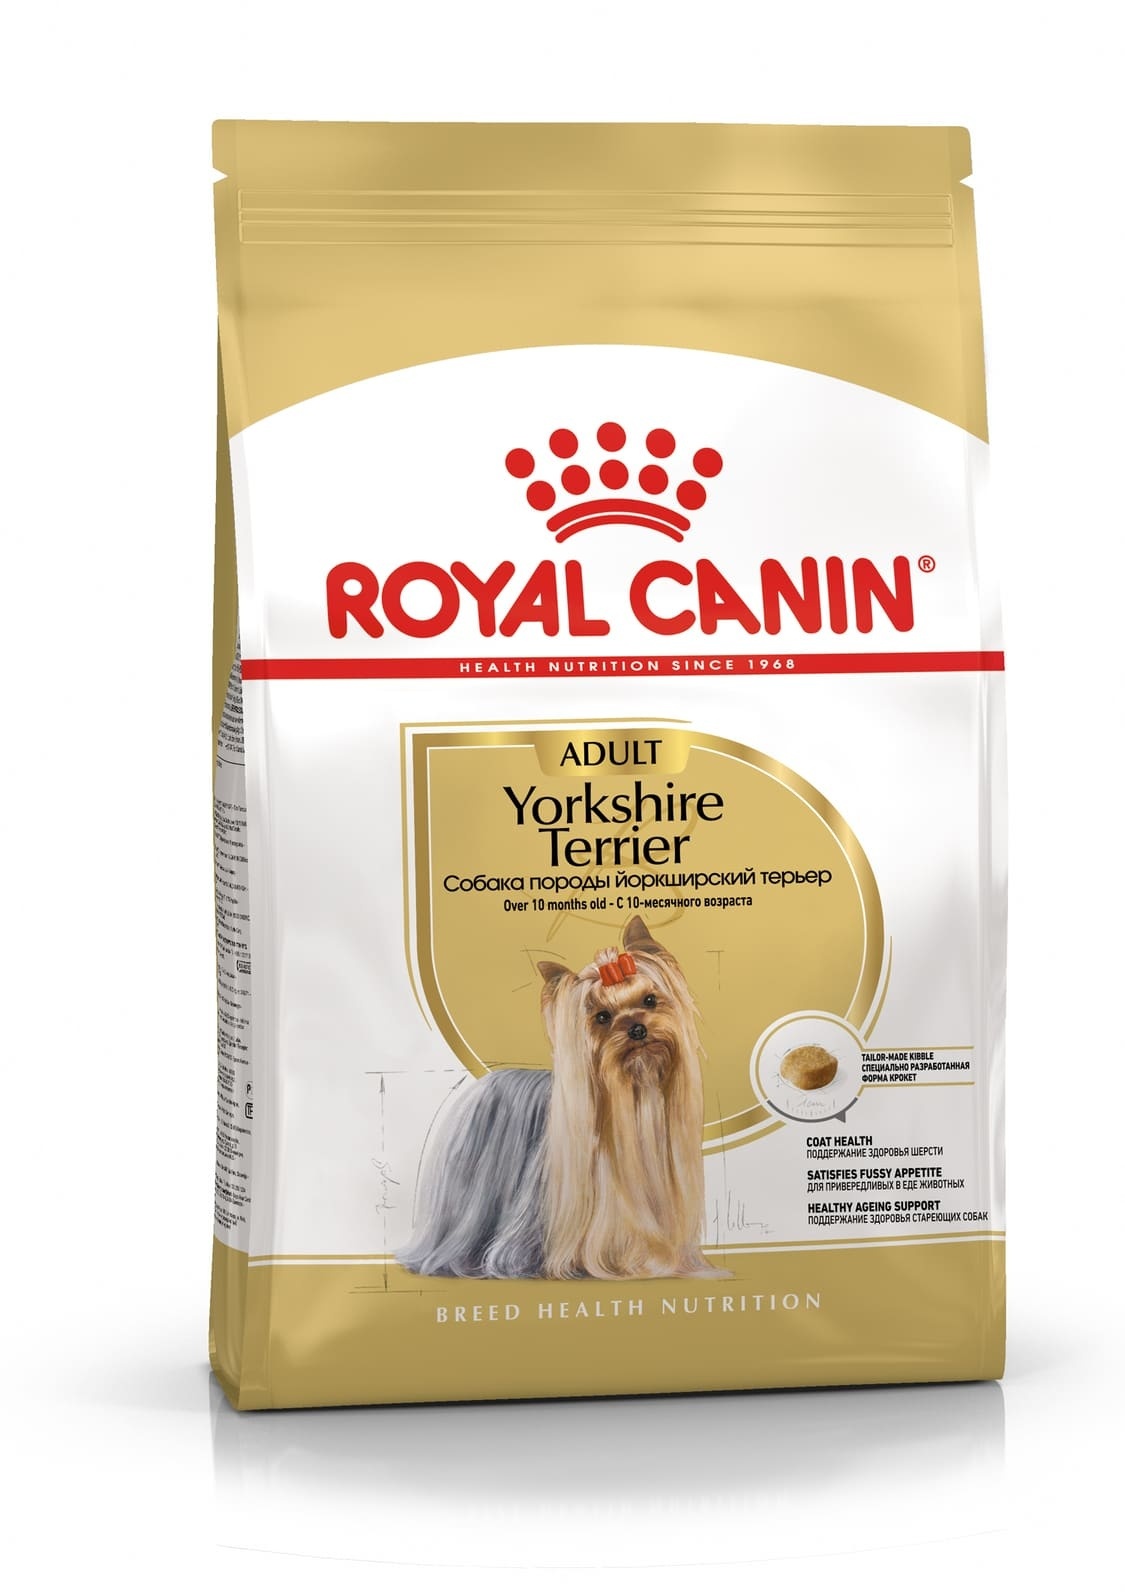 Royal Canin Корм Royal Canin корм для йоркширского терьера с 10 месяцев (500 г) royal canin корм royal canin корм для йоркширского терьера с 10 месяцев 500 г